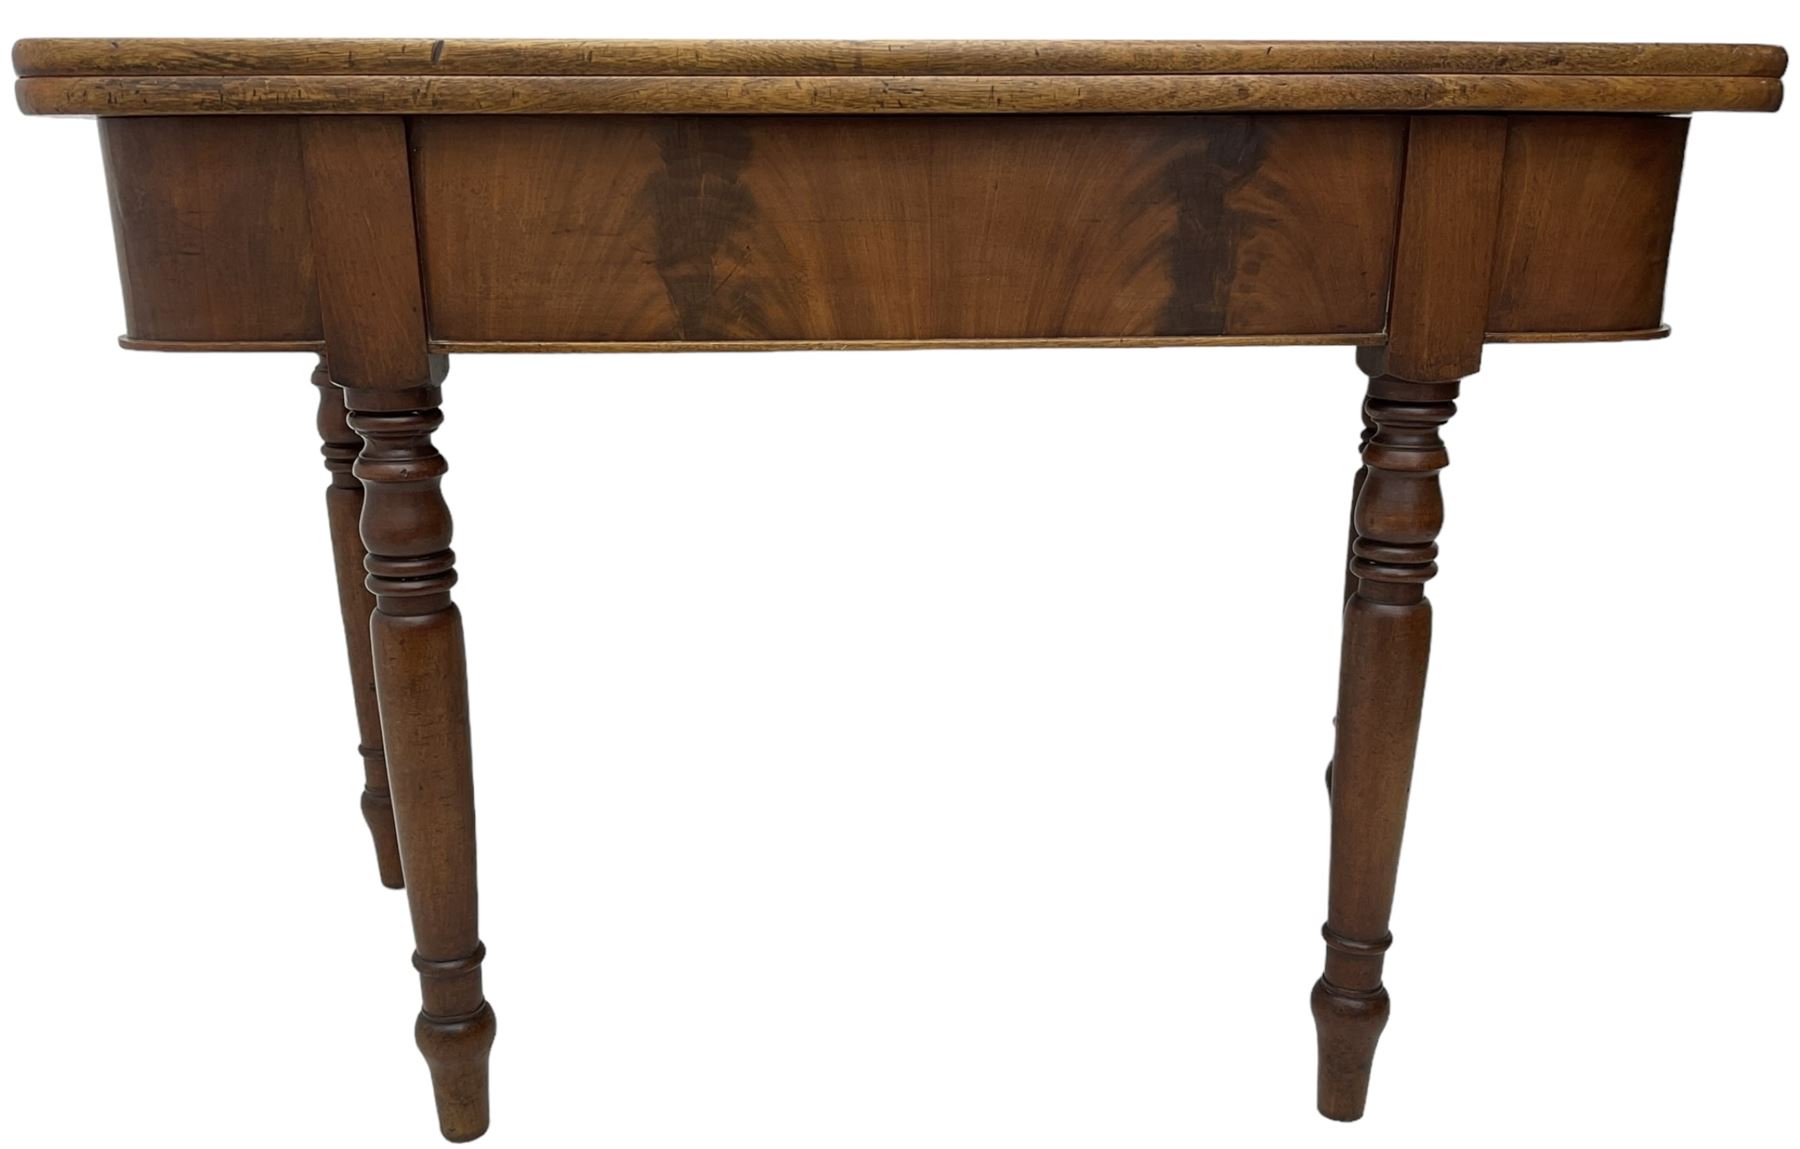 19th century mahogany tea table - Image 5 of 6